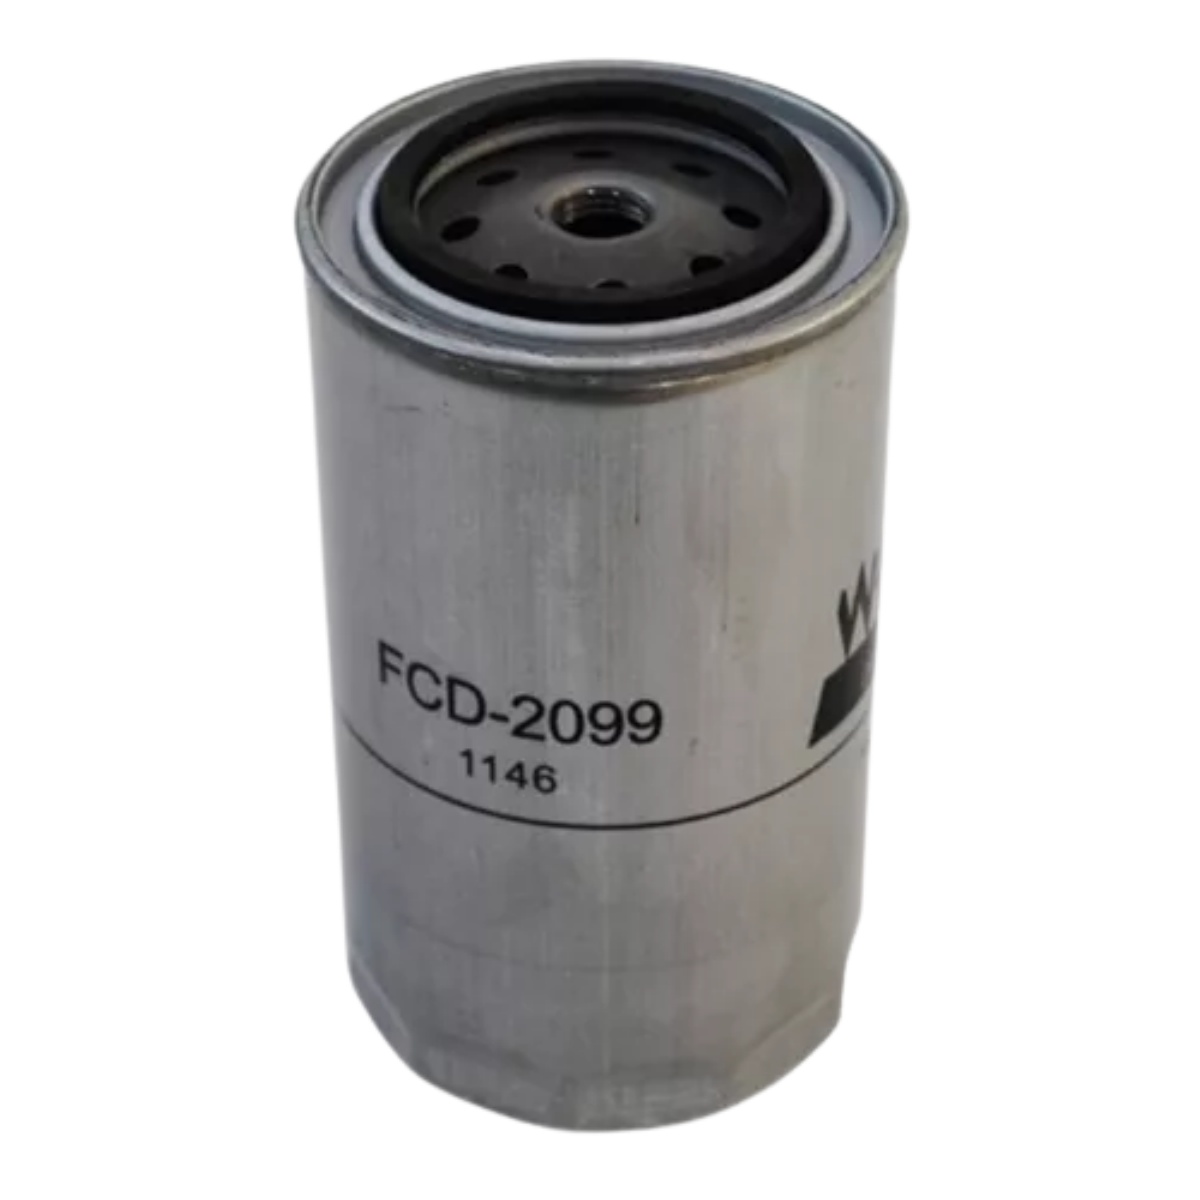 Filtro Combustivel Iveco Daily 55c17 3.0 A Partir De 2013 Wega Fcd2099